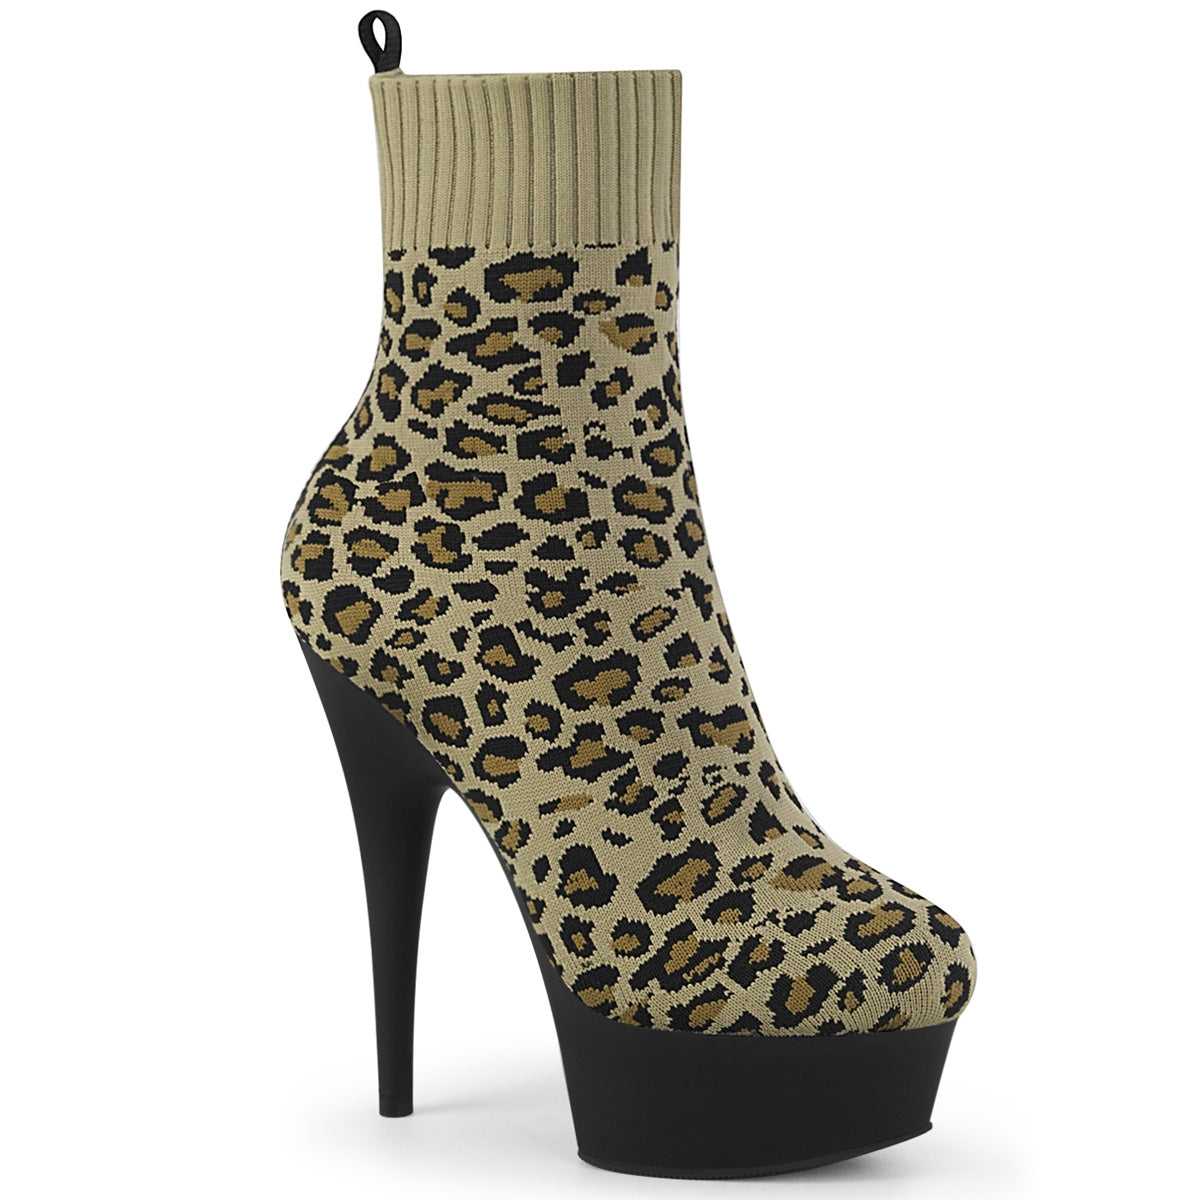 Delight-1002LP 6 "Heel Tan Leopard Print Pole Dancer Shoes